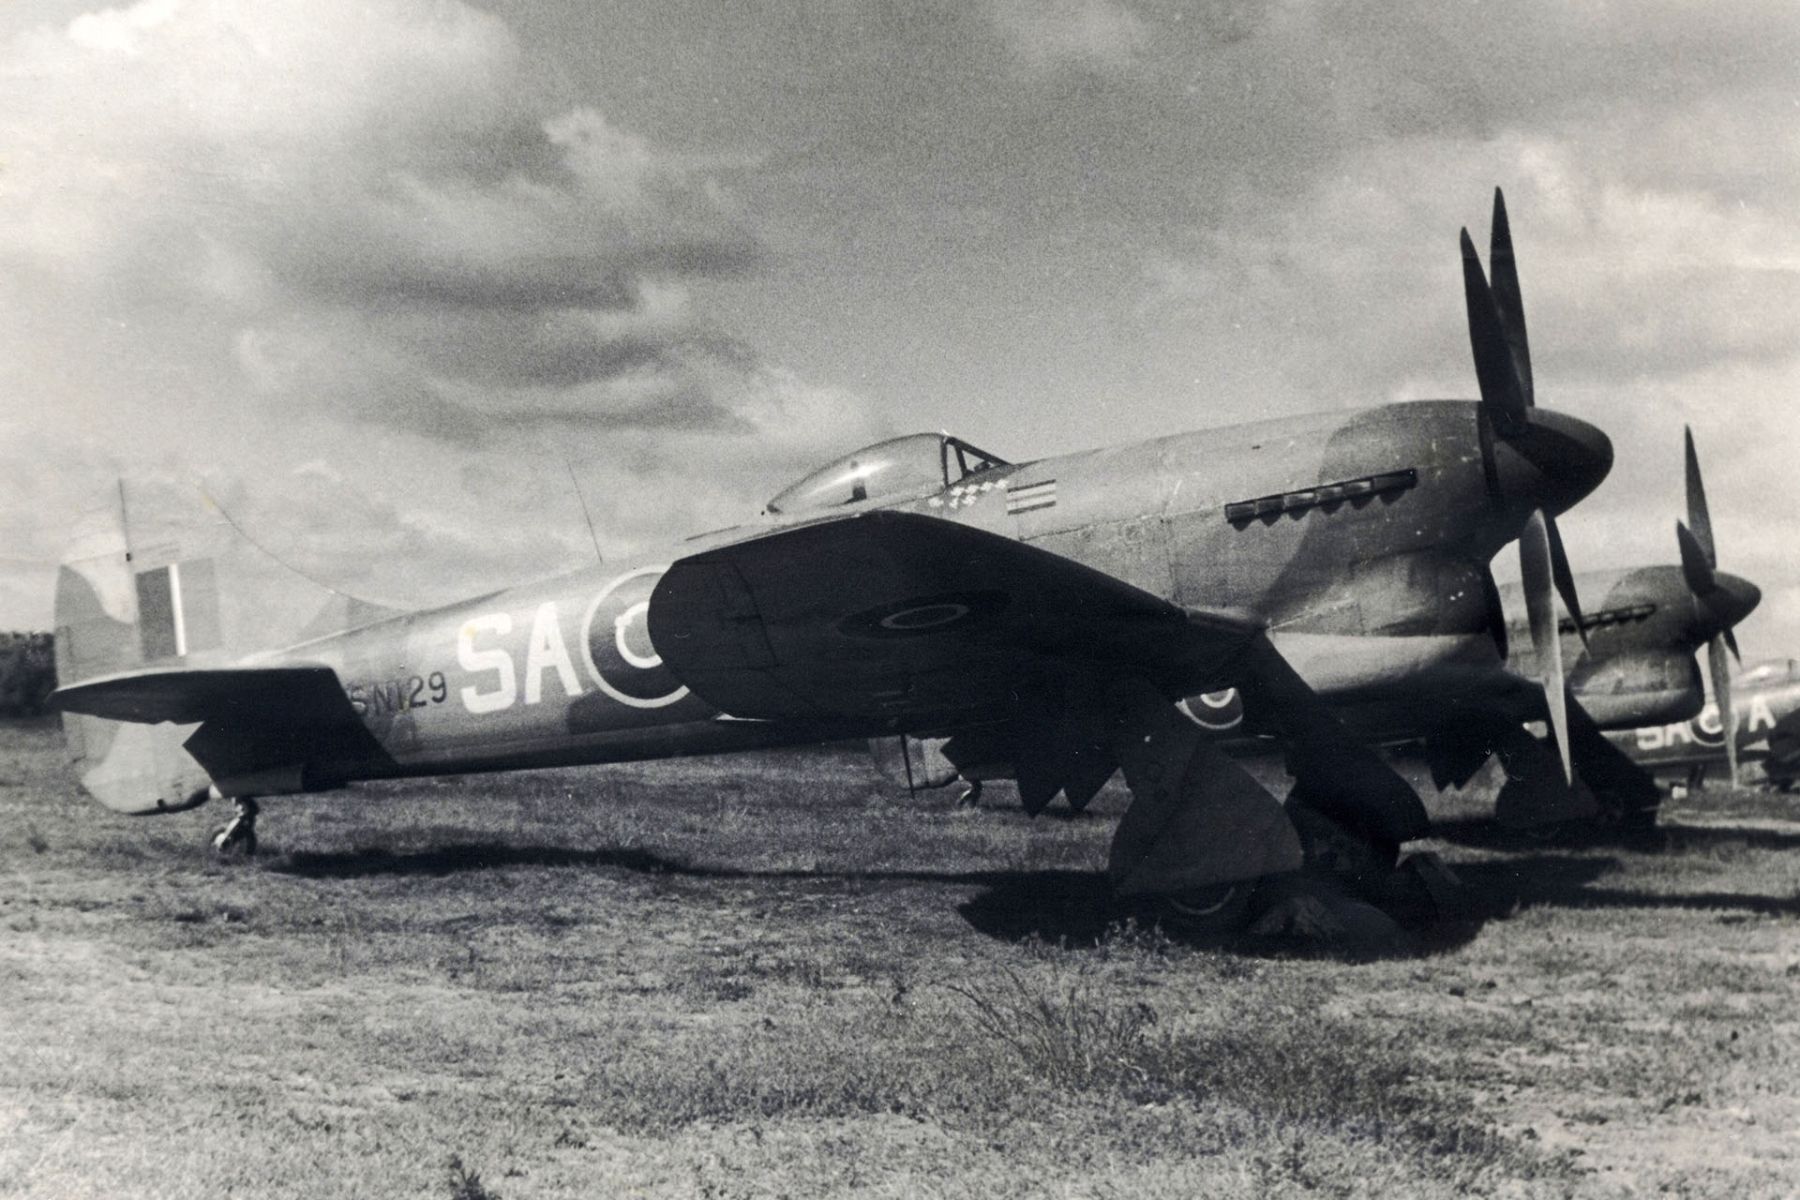 Hawker Tempest Mk.V, s/n. SN121, code SA-M, no. 486 Squadron RNZAF, Germany, May 1945